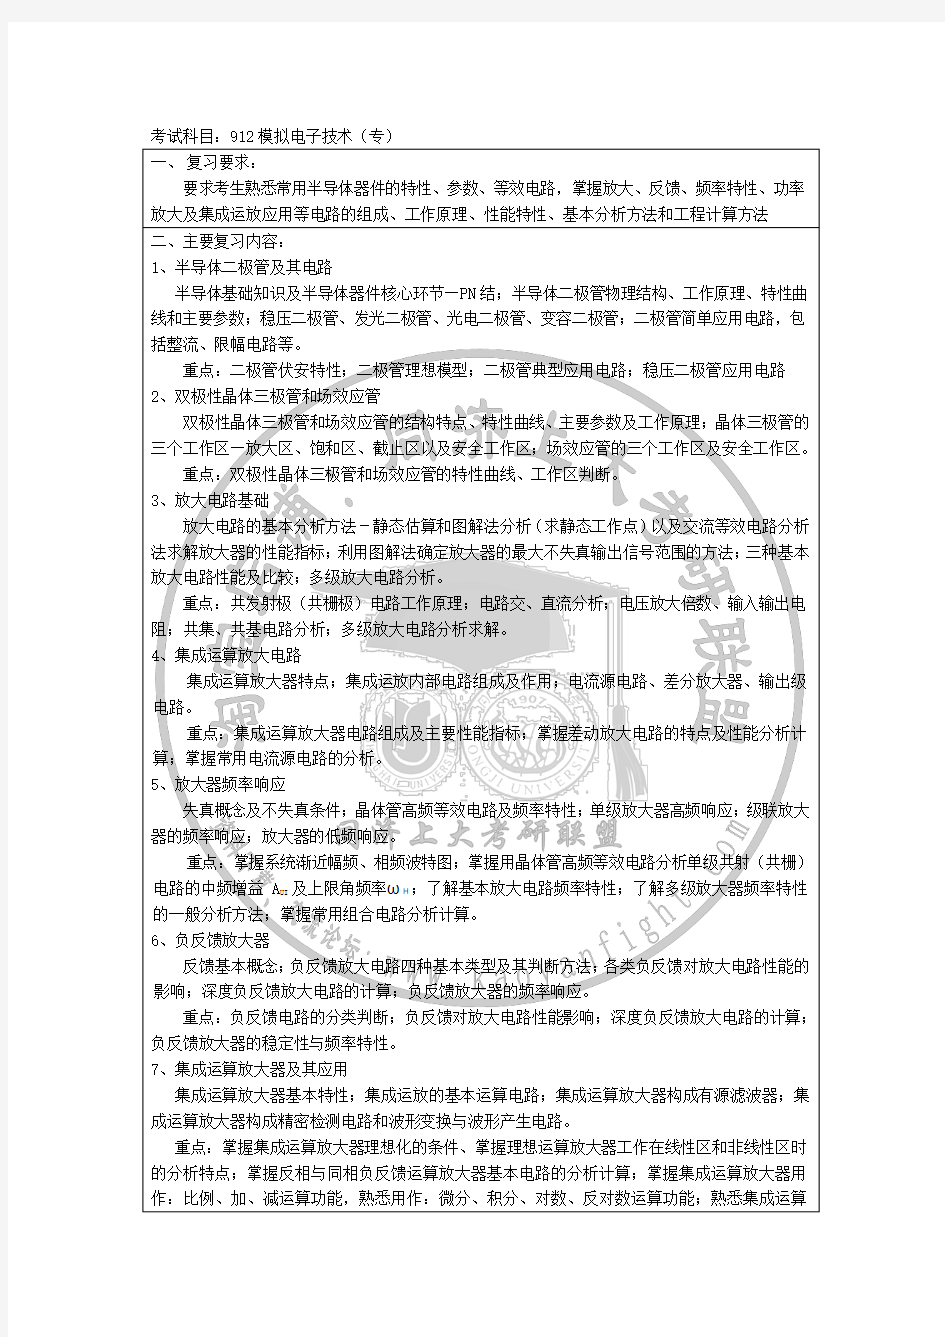 2015上海大学912模拟电子技术(专)考试大纲